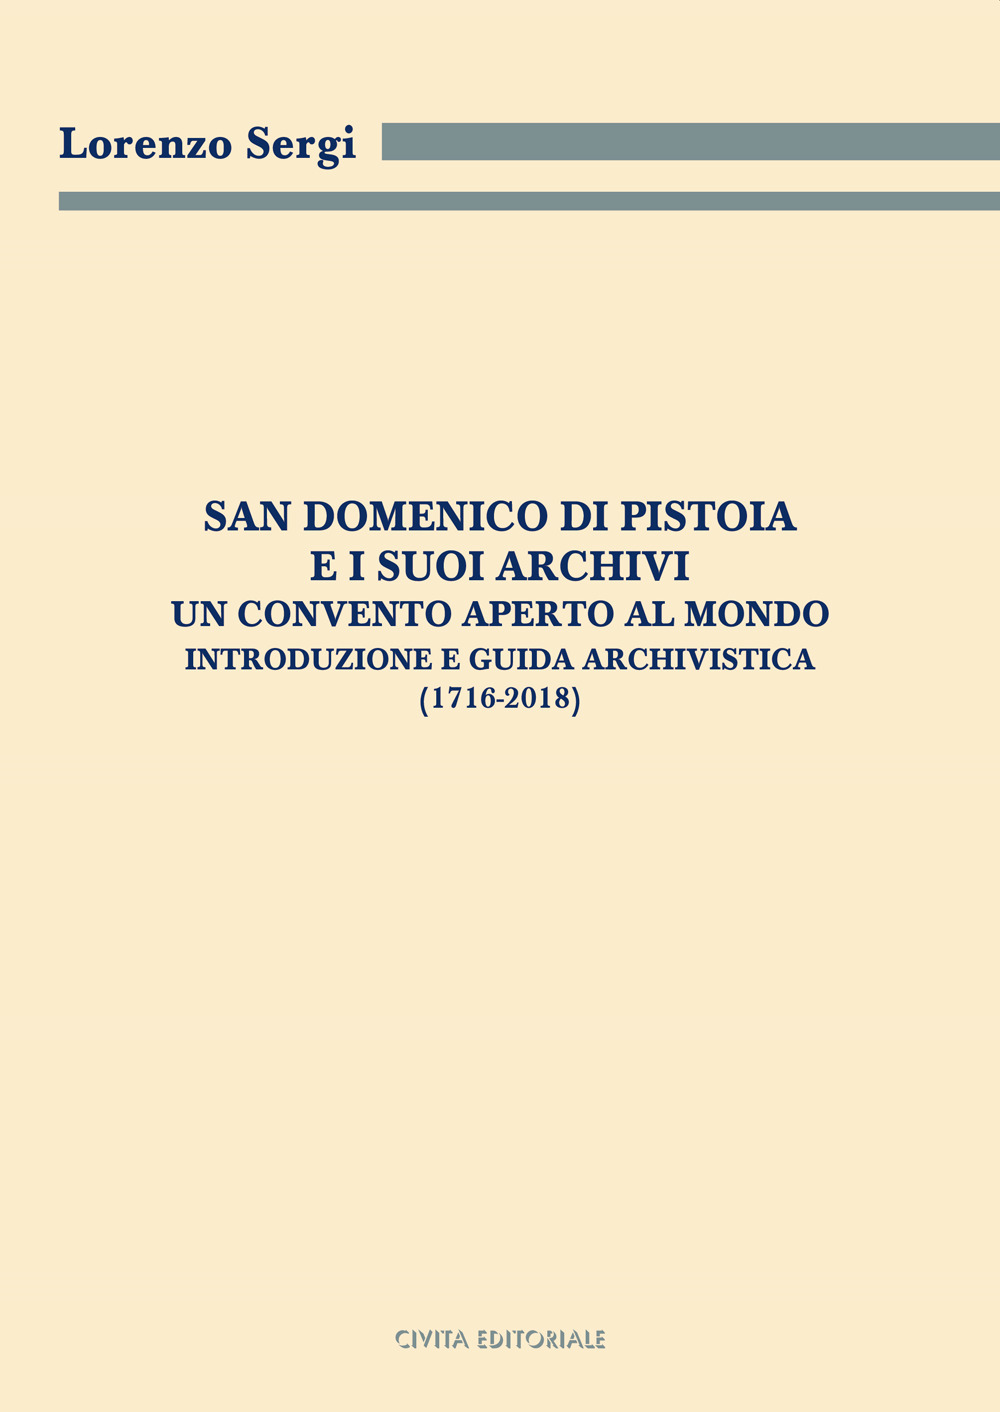 San Domenico di Pistoia e i suoi archivi: un convento aperto al mondo. Introduzione e guida archivistica (1716-2018)